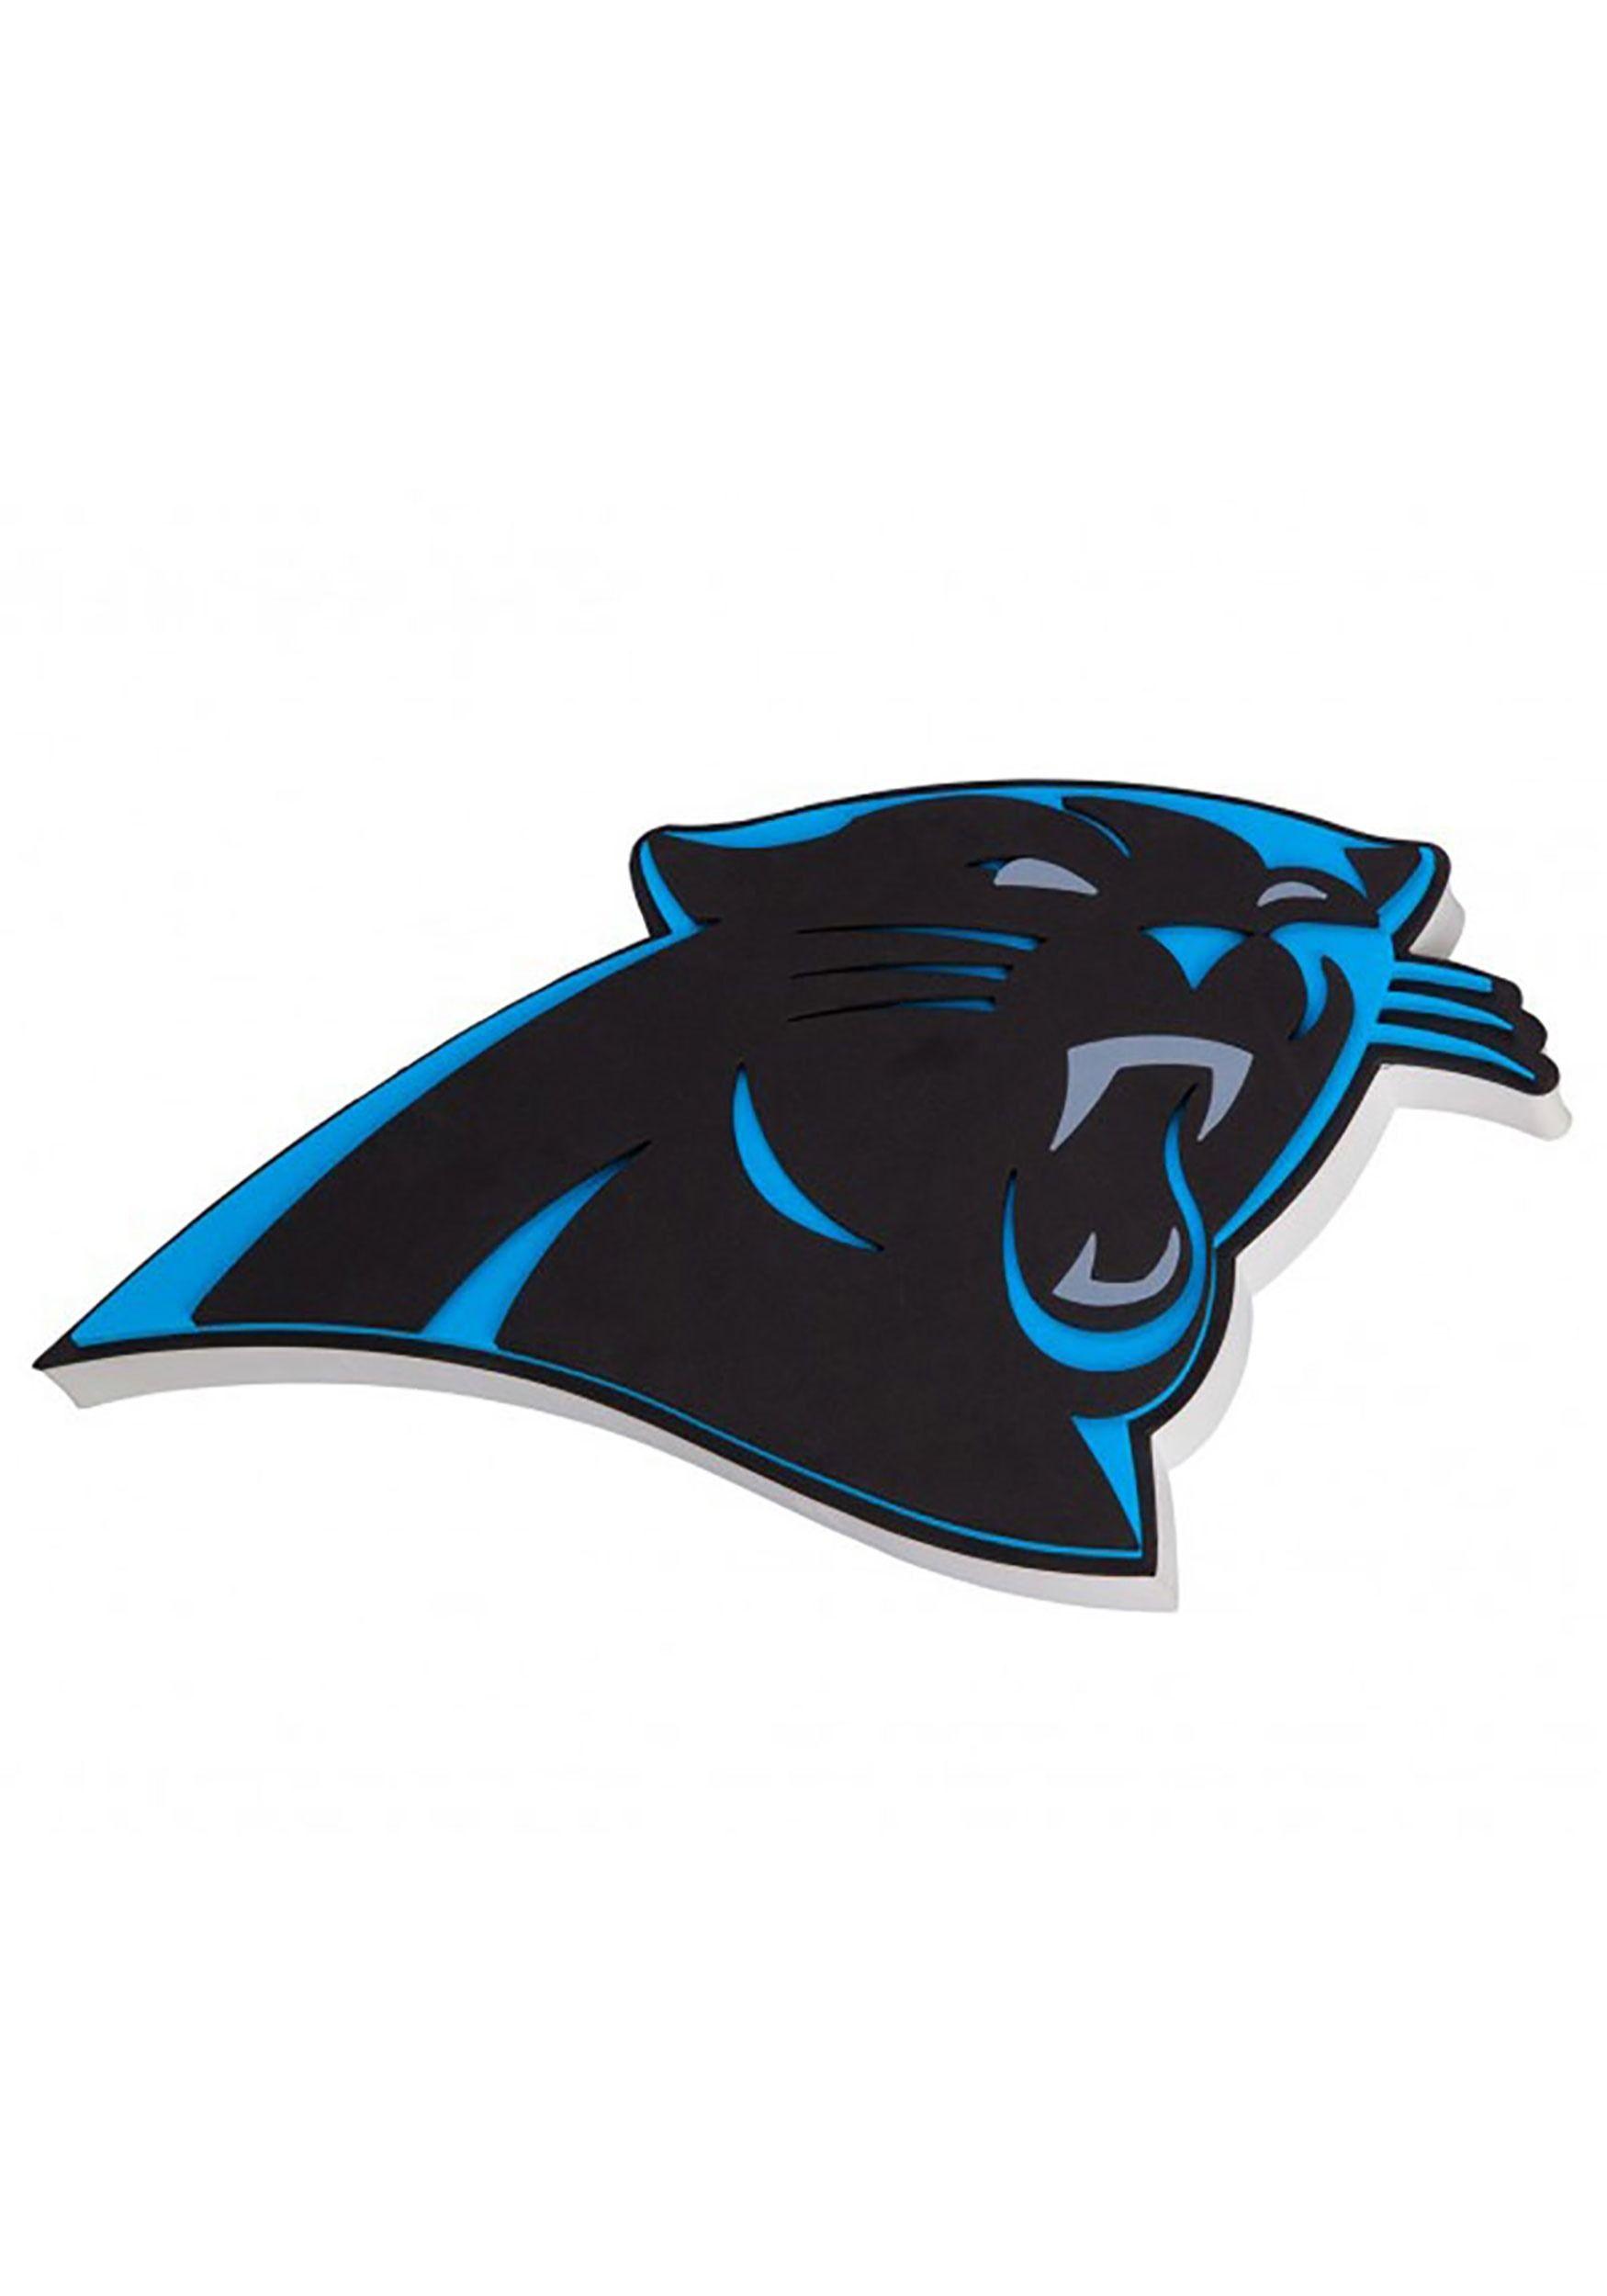 Carolina Panthers Logo - Carolina Panthers NFL Logo Foam Sign